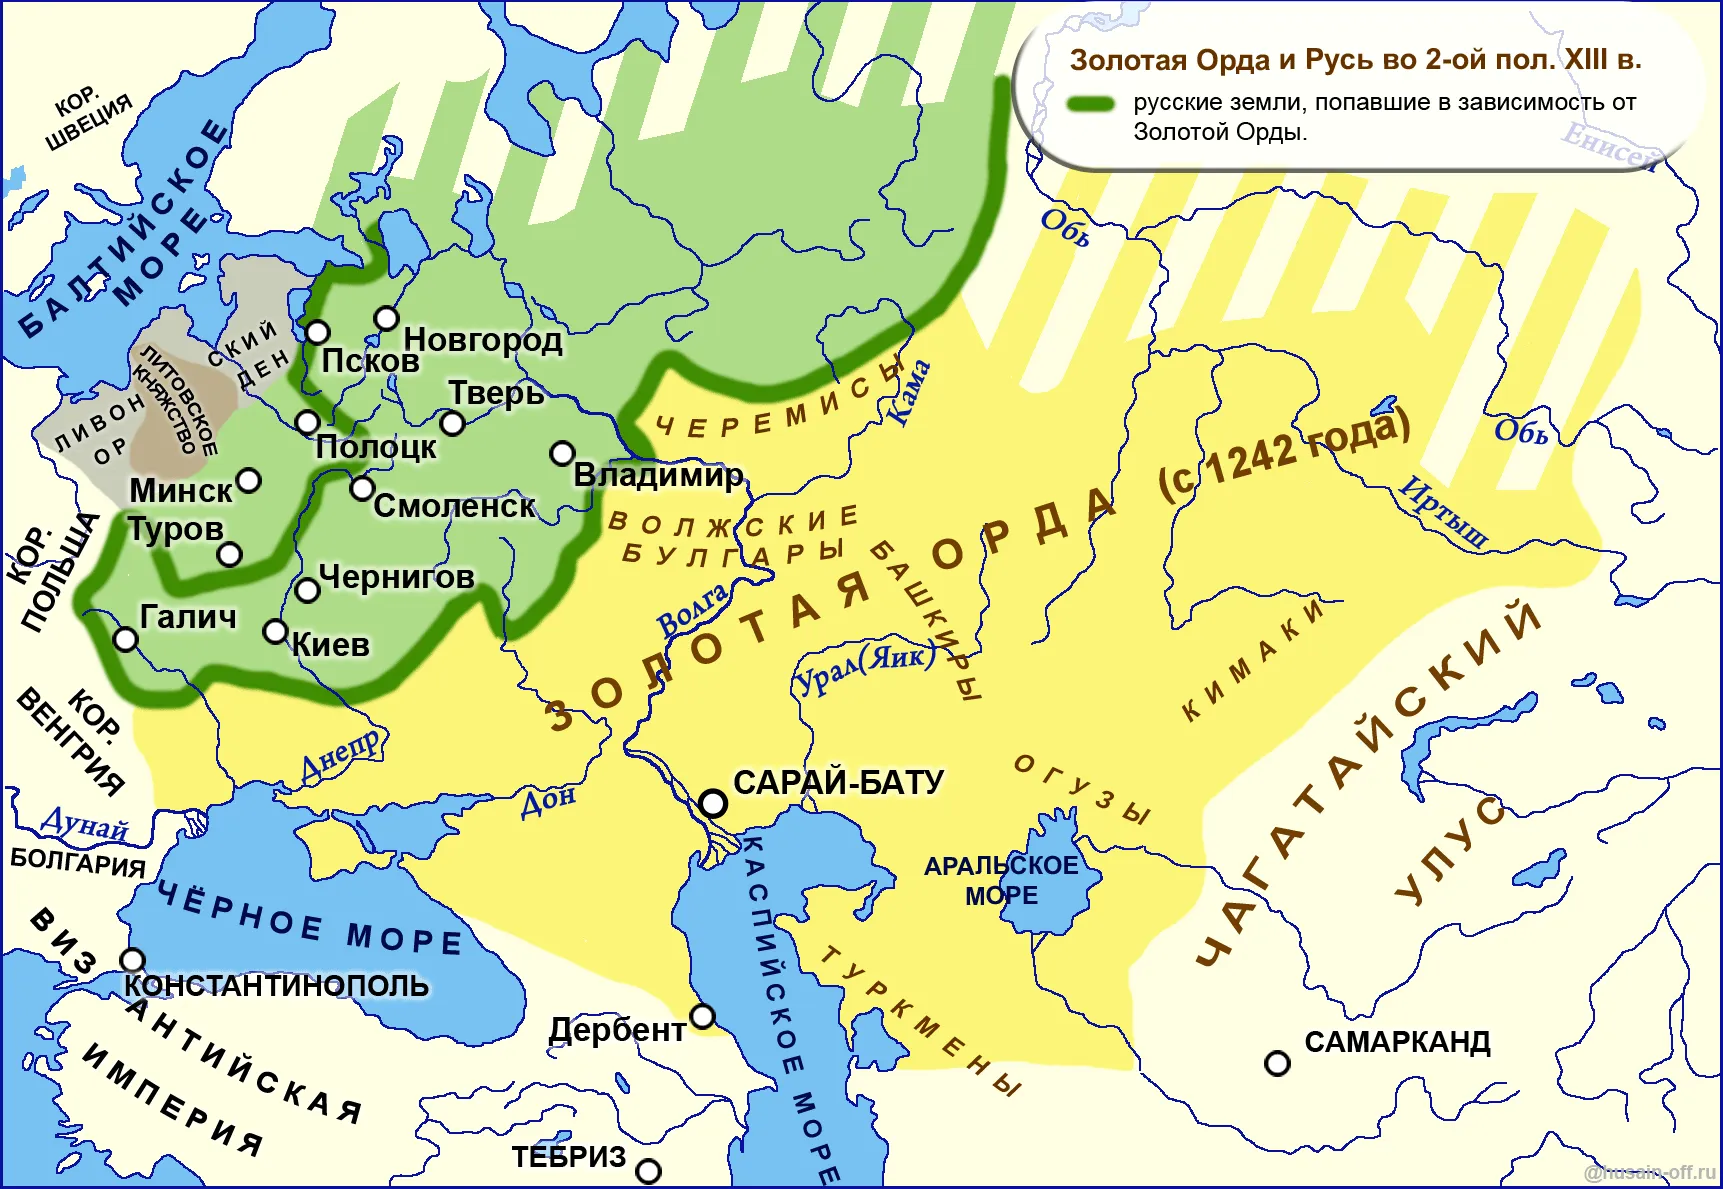 Сказать орда. Карта золотой орды 13 век. Карта золотой орды 14 век. Улус Джучи Золотая Орда. Карта золотой орды улус Джучи.